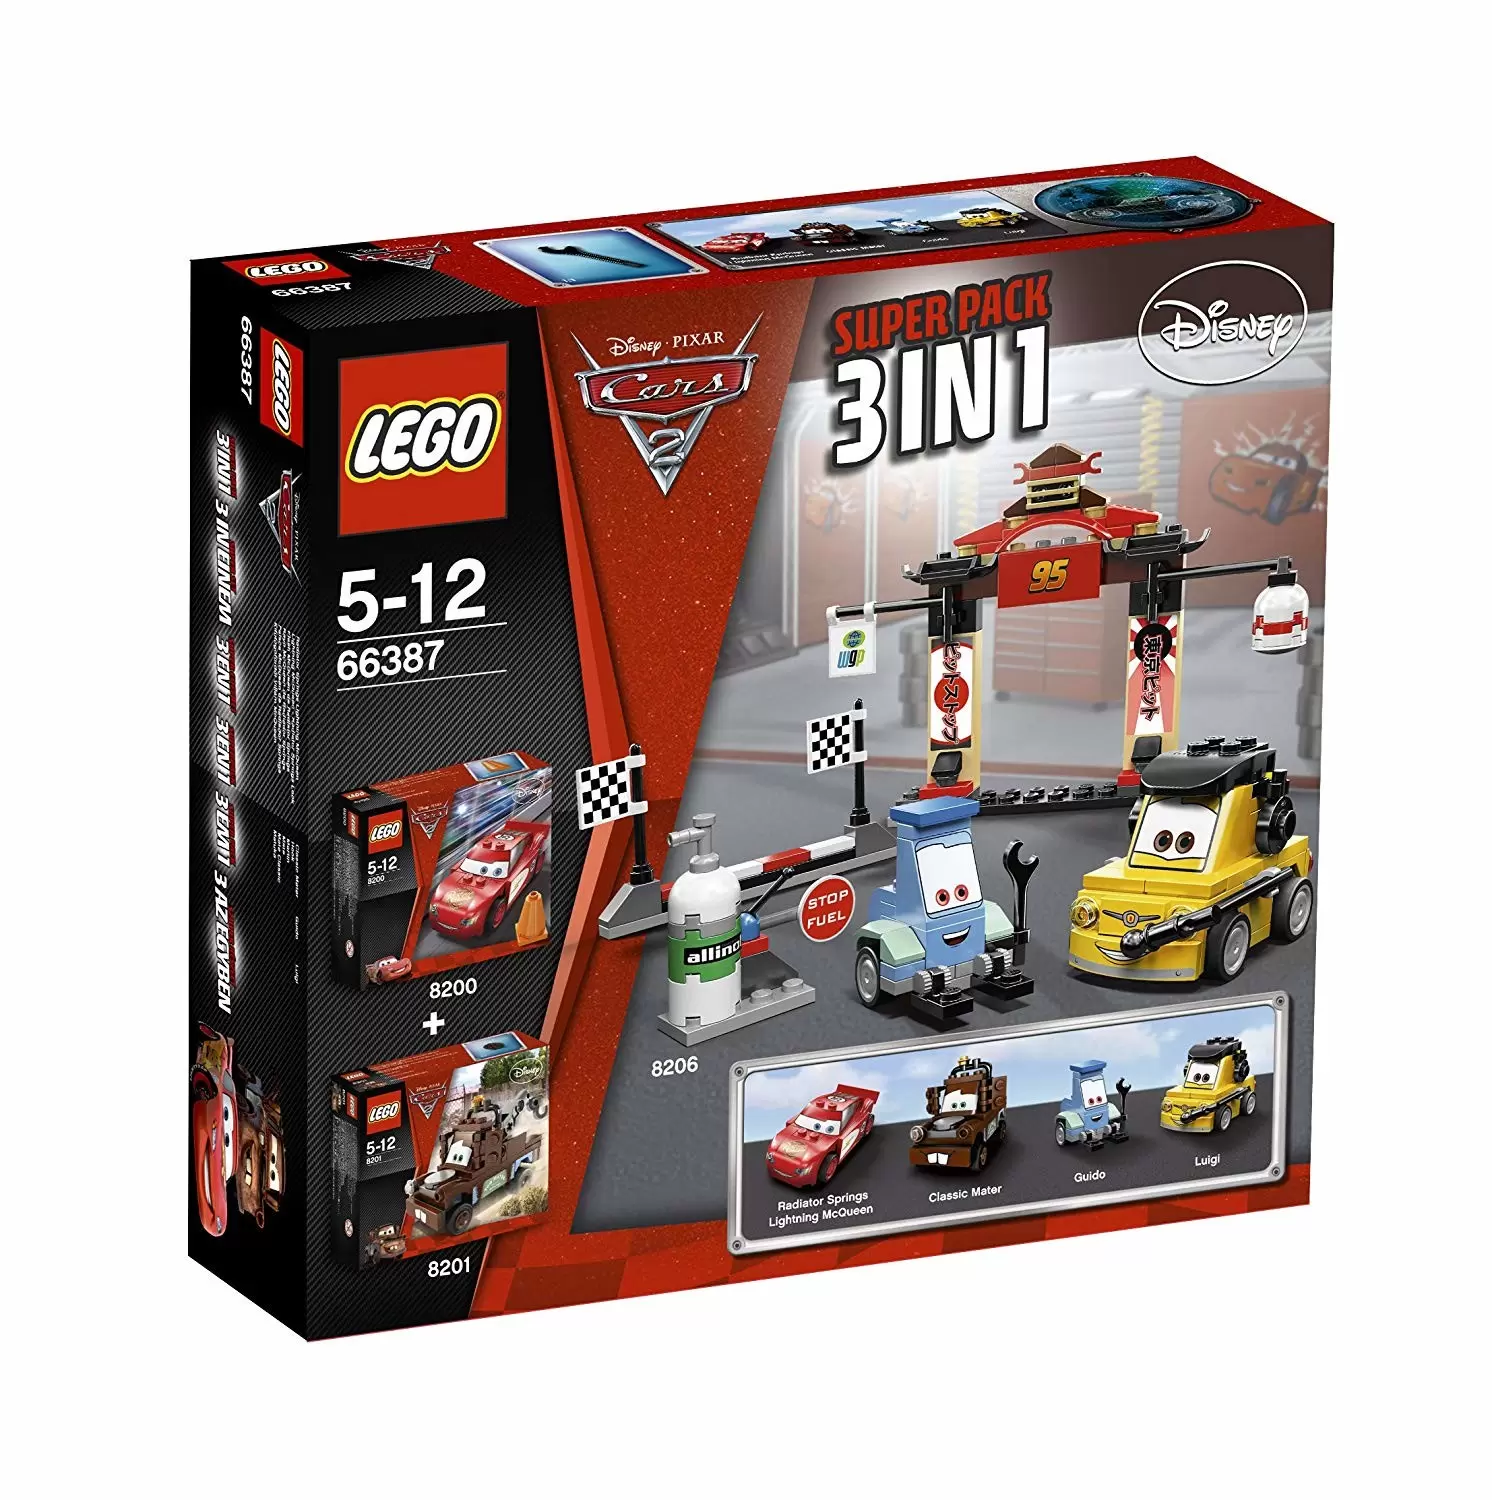 LEGO Cars - 3-in-1 Super Pack